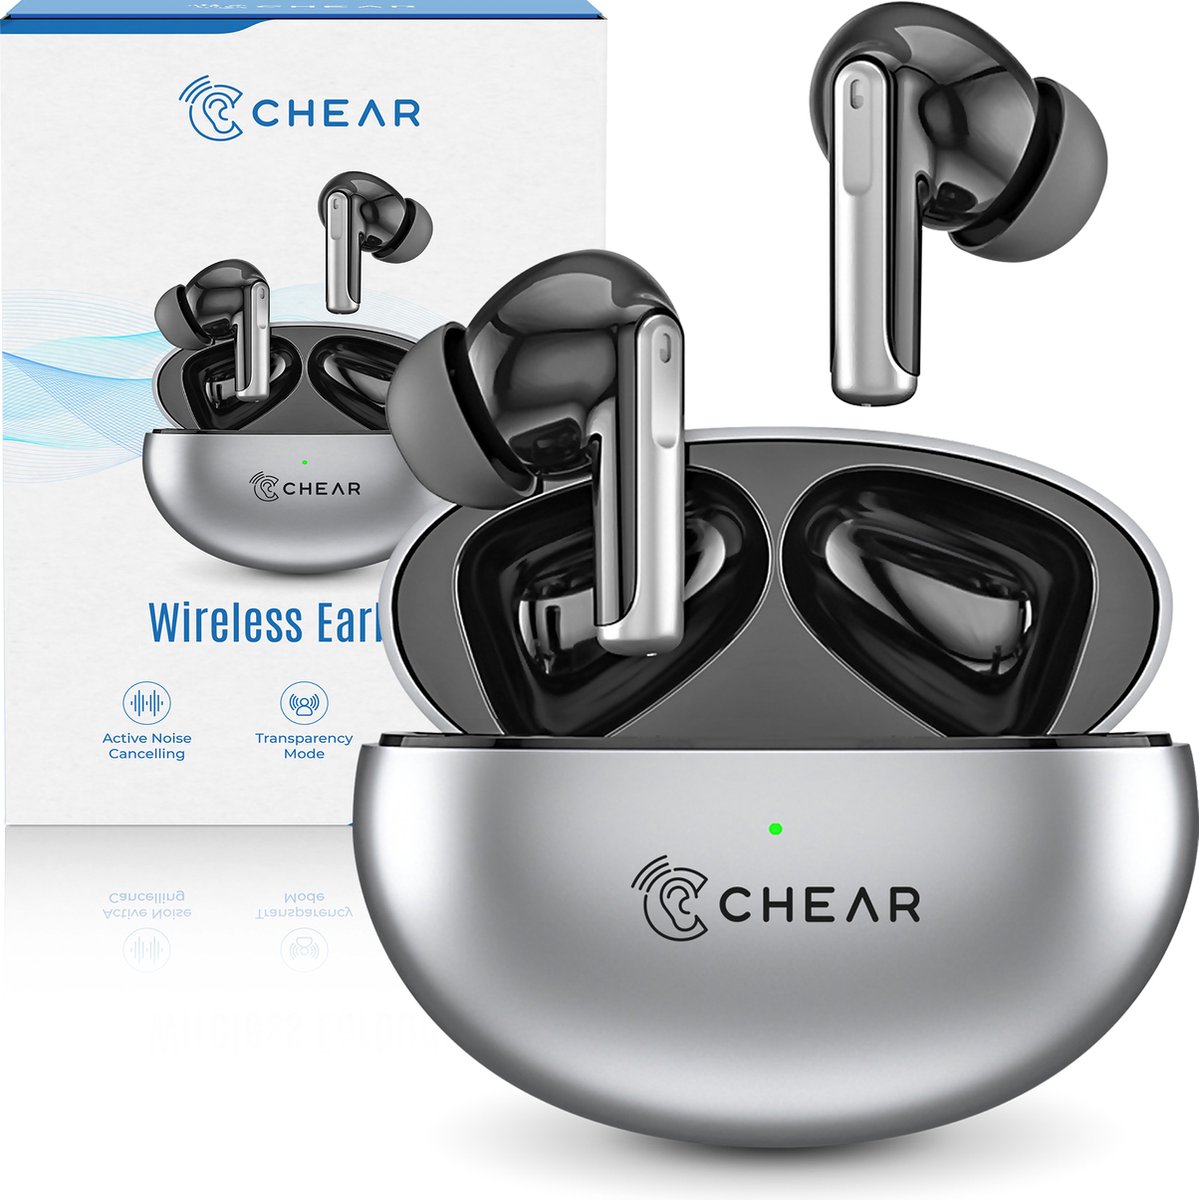 Chear Draadloze Oordopjes - Oordoppen Draadloos - In-Ear Sport Oortjes - Earpods - Bluetooth 5.3 - Noise Cancelling/Transparante Modus - Zwart/Grijs - Chear